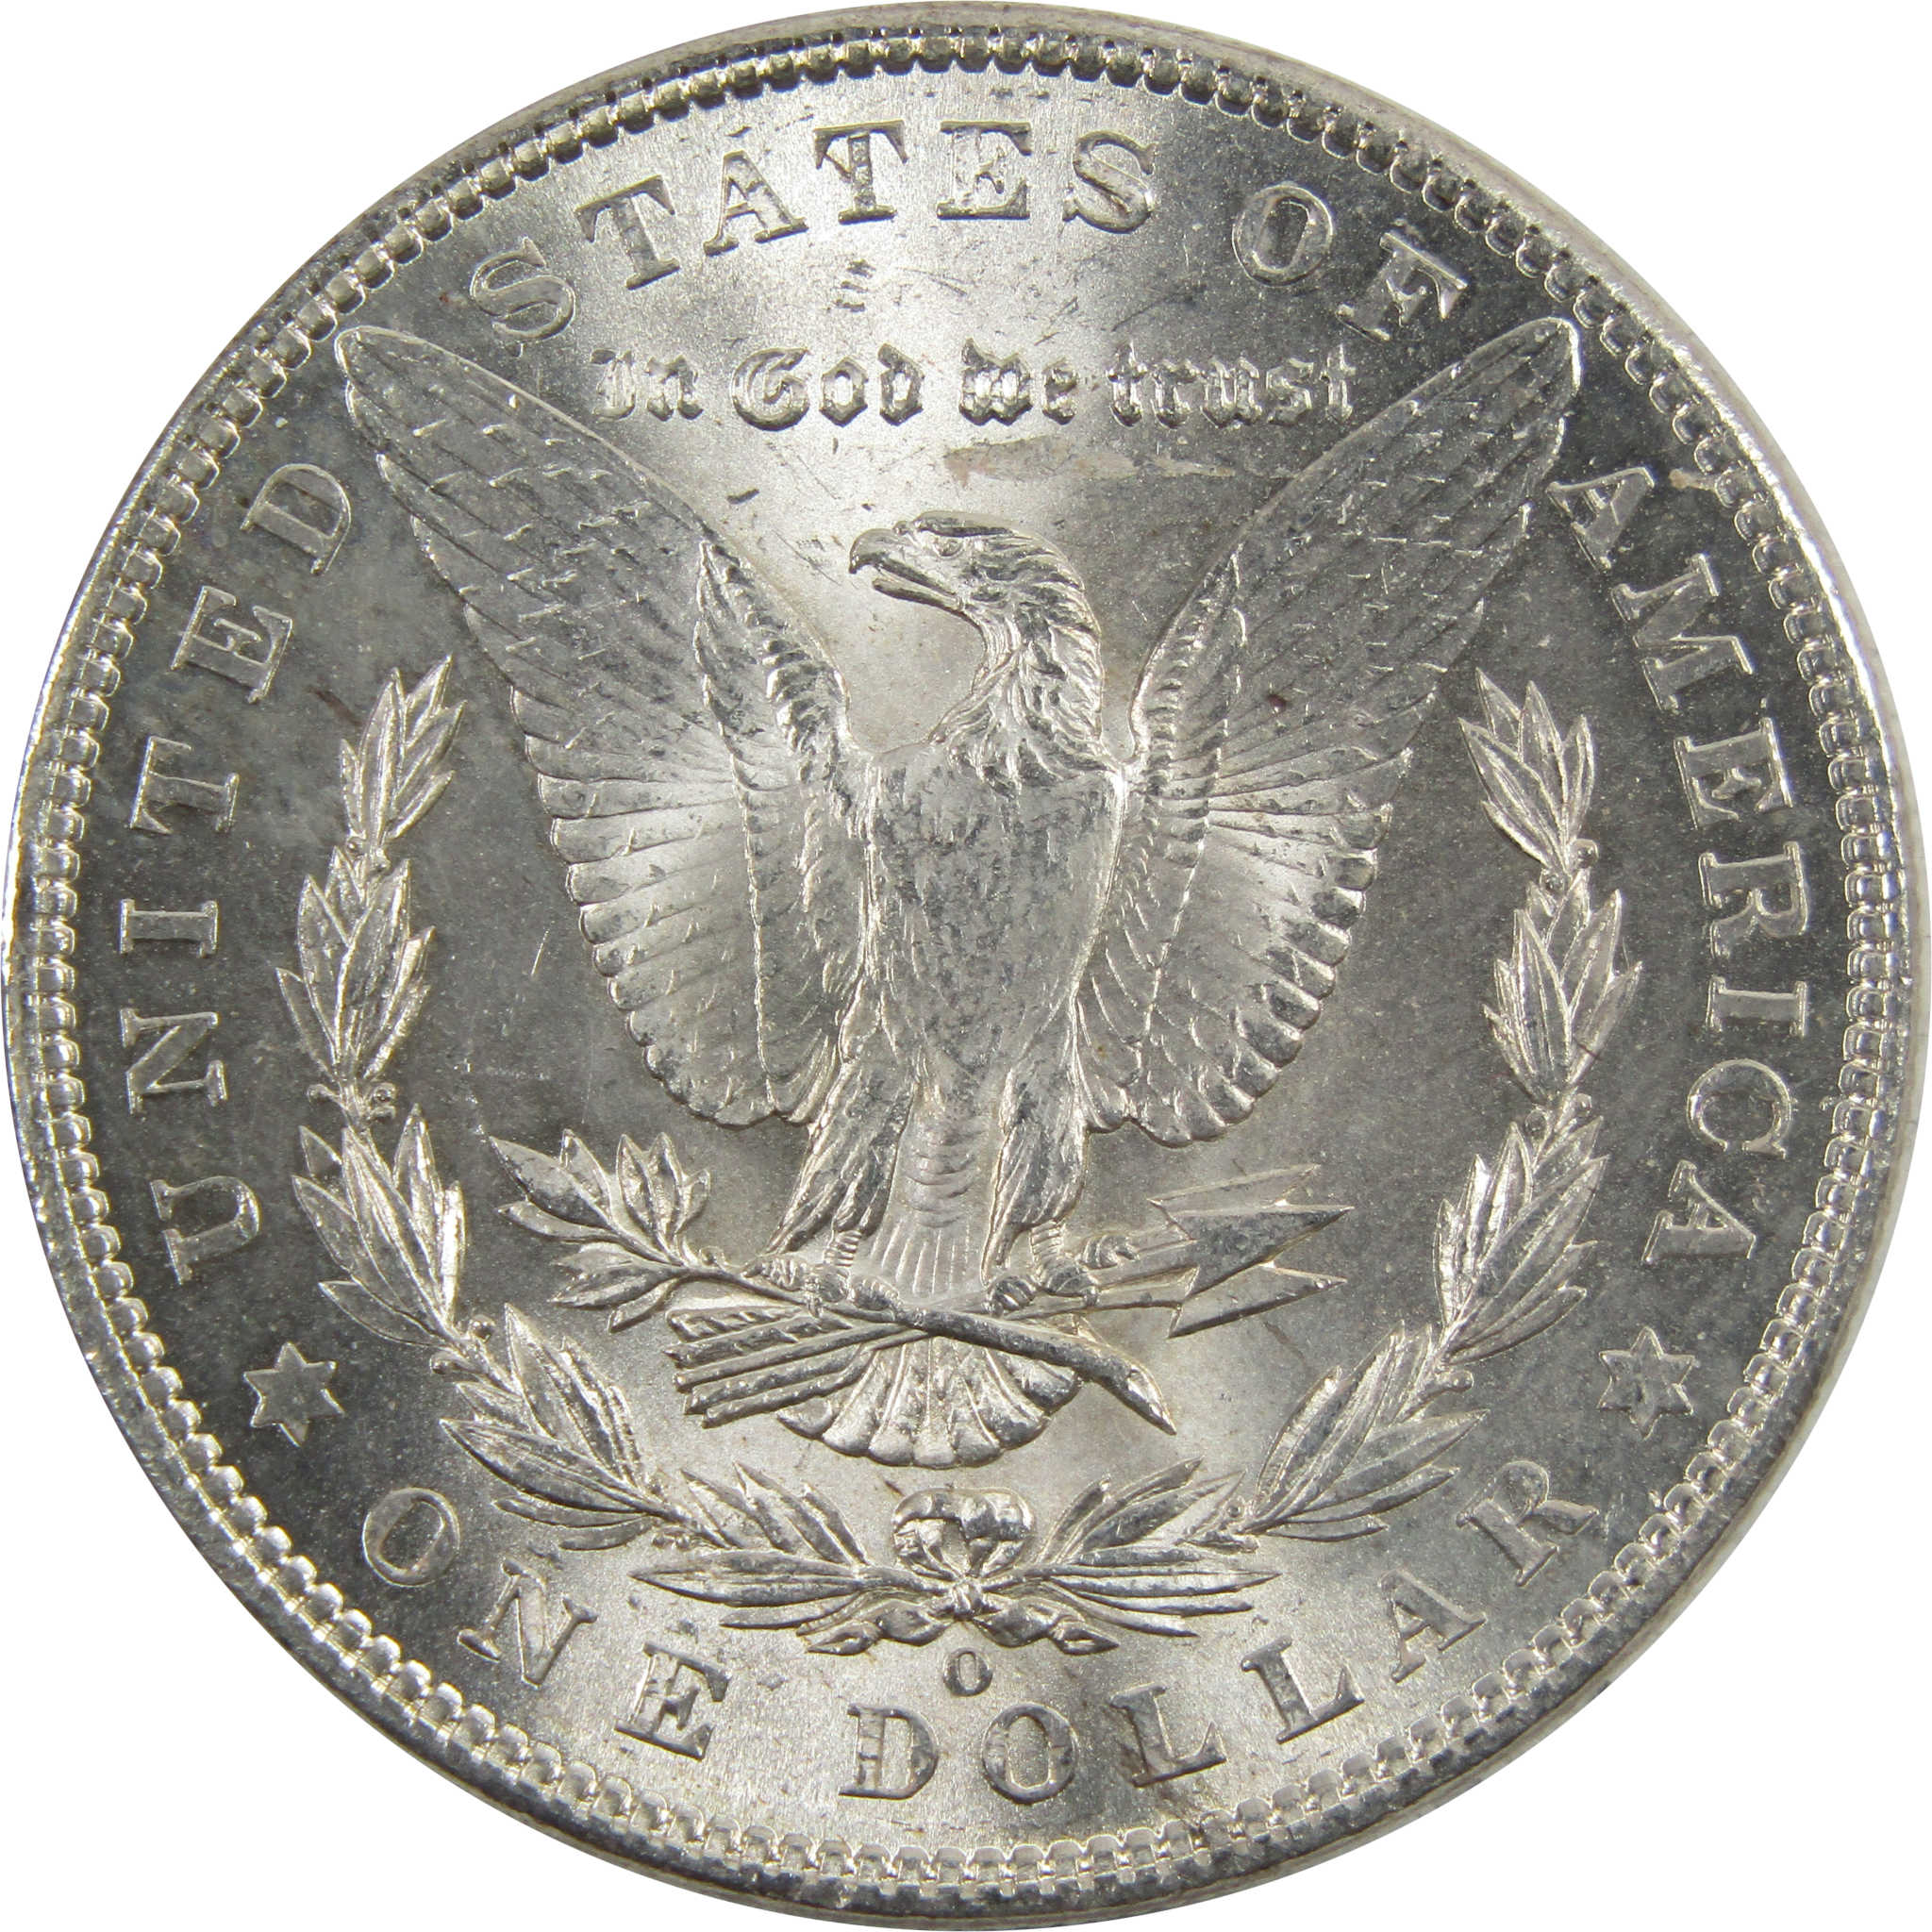 1902 O Morgan Dollar BU Uncirculated 90% Silver $1 Coin SKU:I5200 - Morgan coin - Morgan silver dollar - Morgan silver dollar for sale - Profile Coins &amp; Collectibles